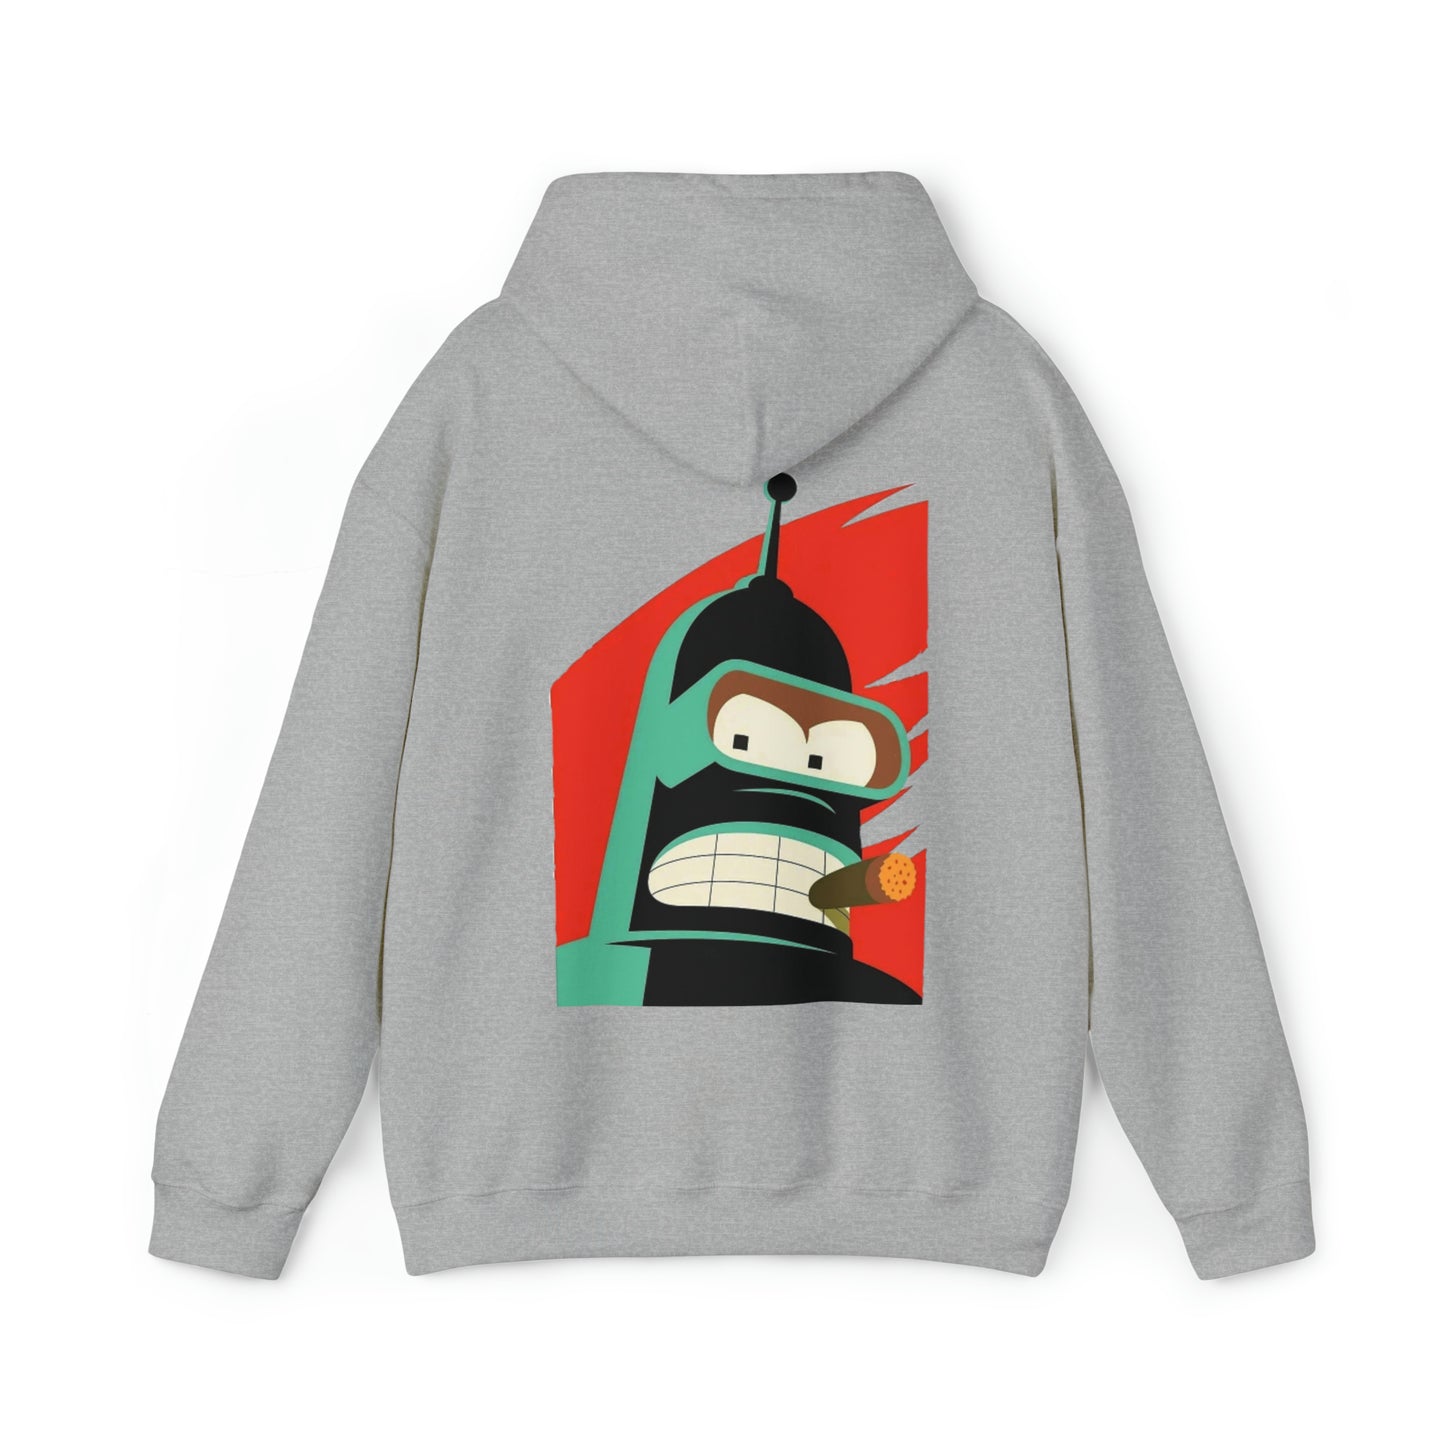 Bender Comfy Hooded Sweatshirt